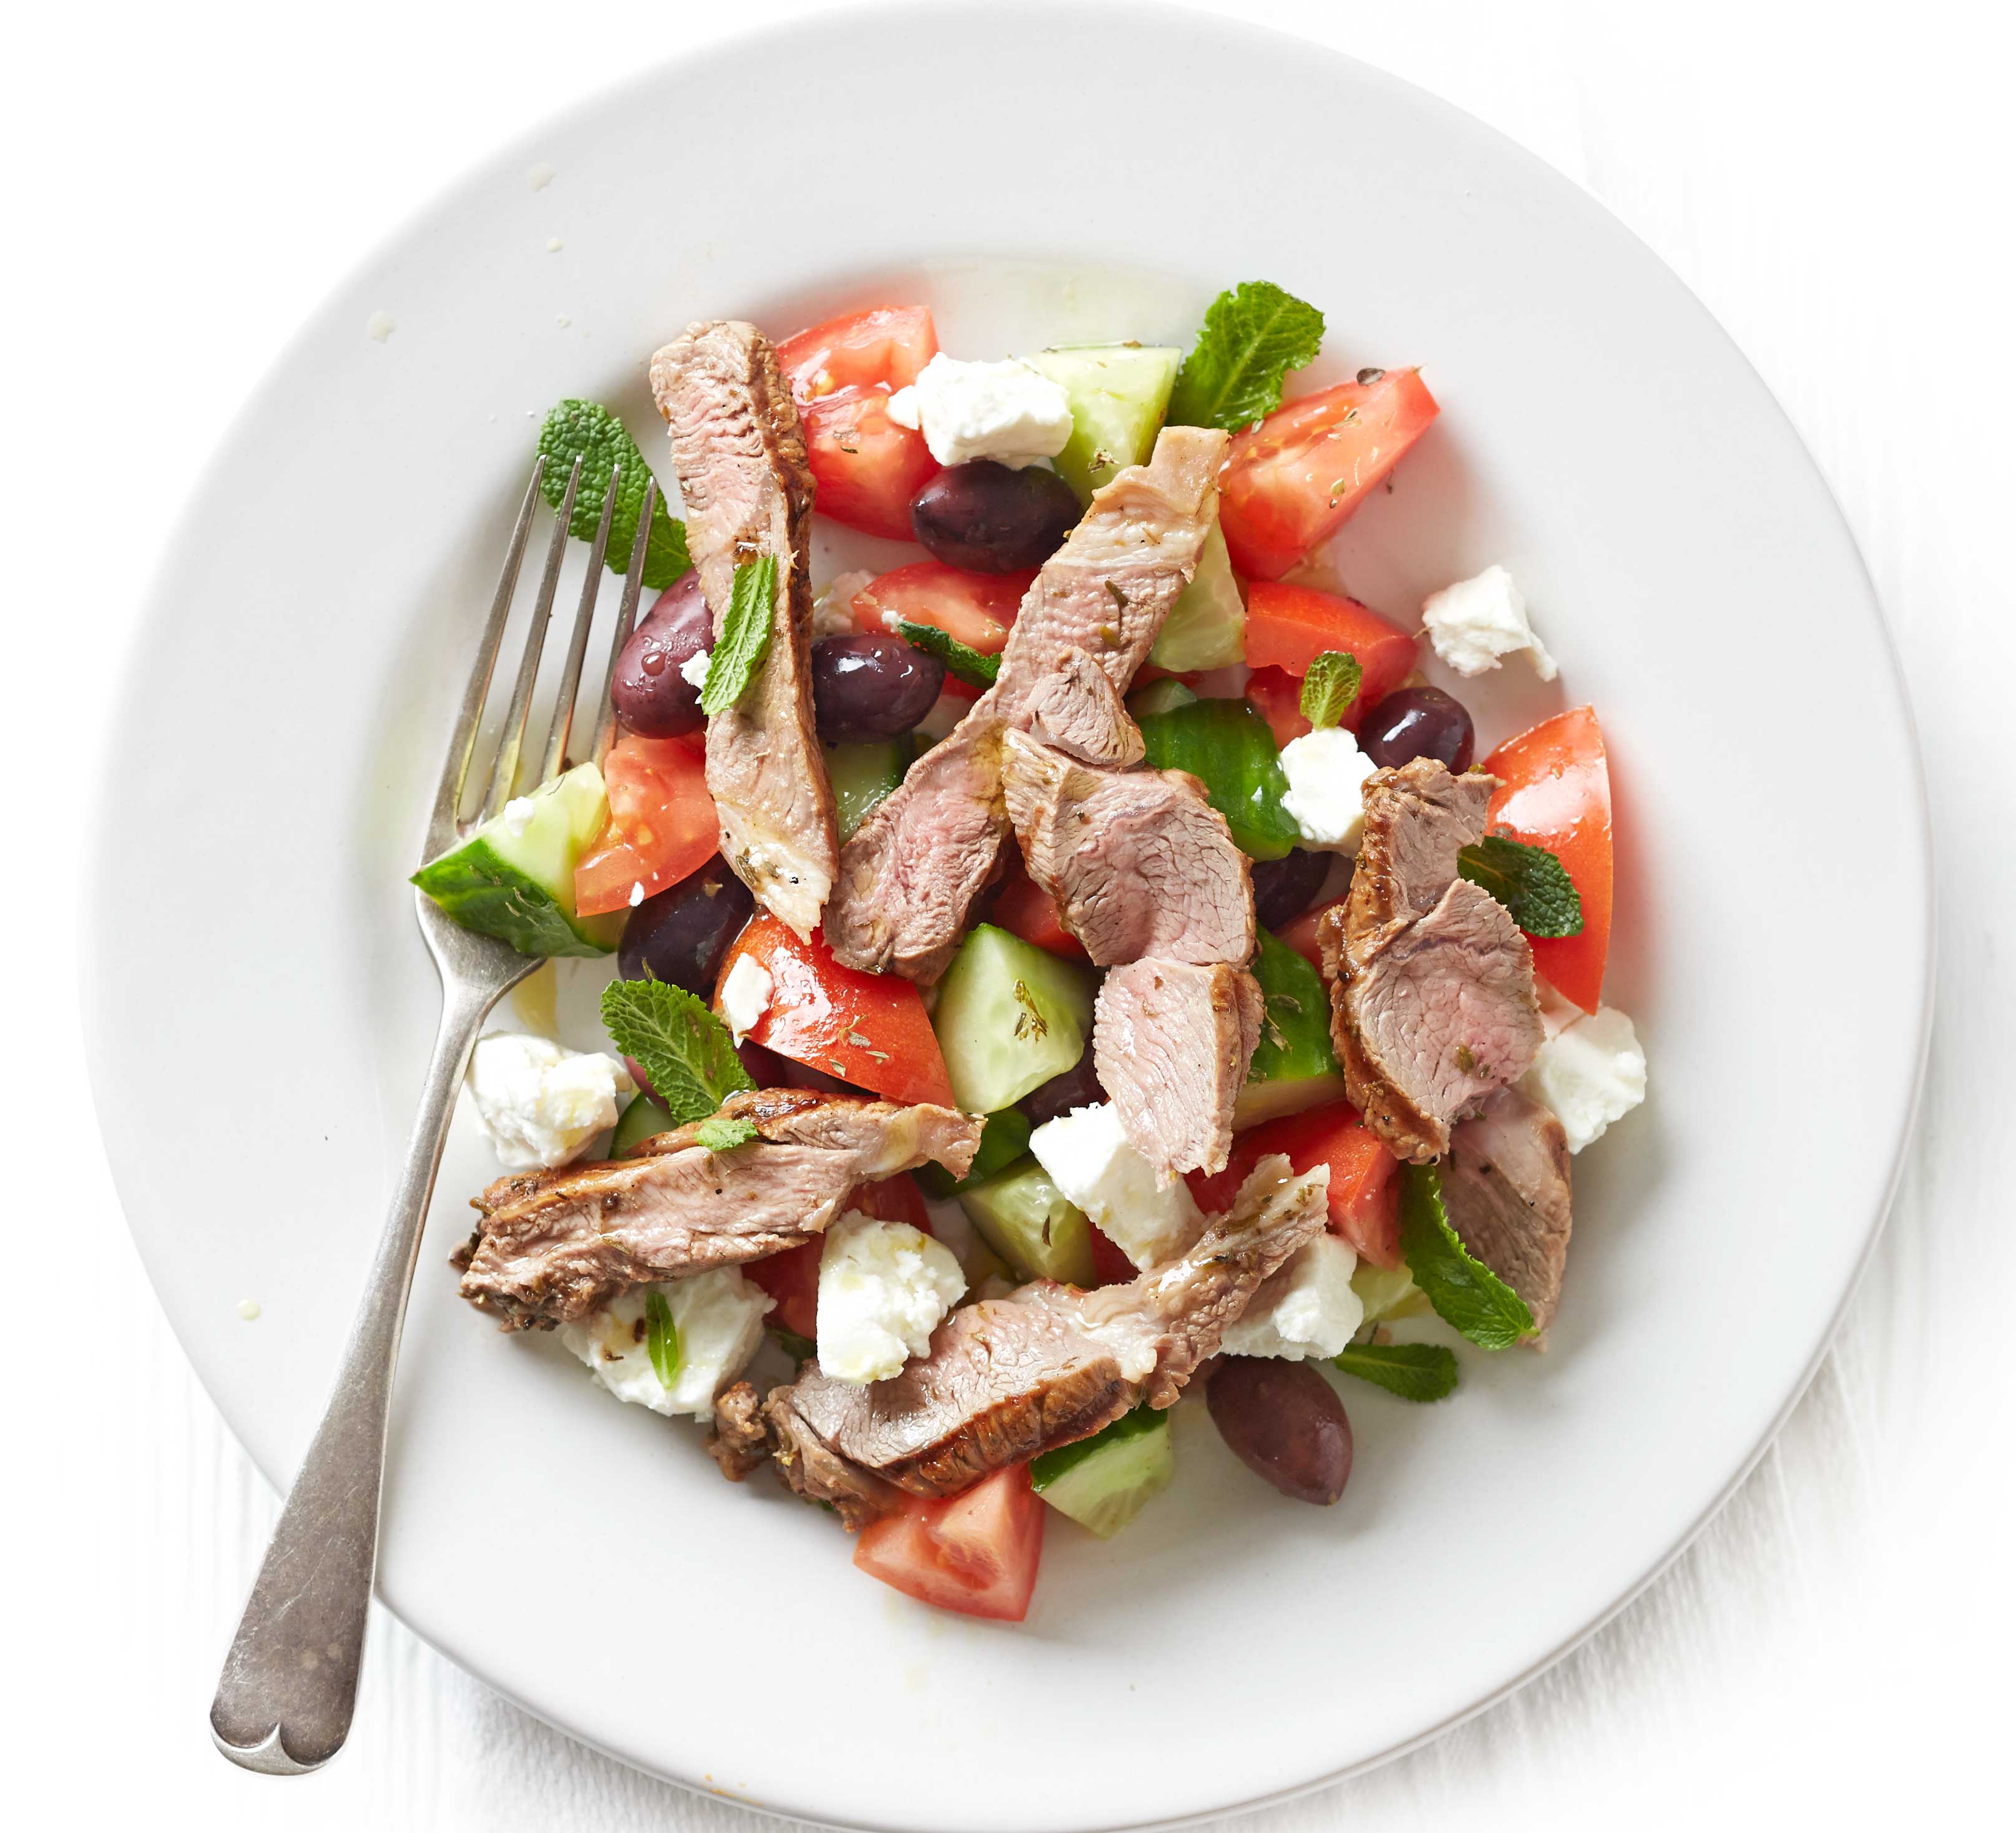 Greek lamb salad